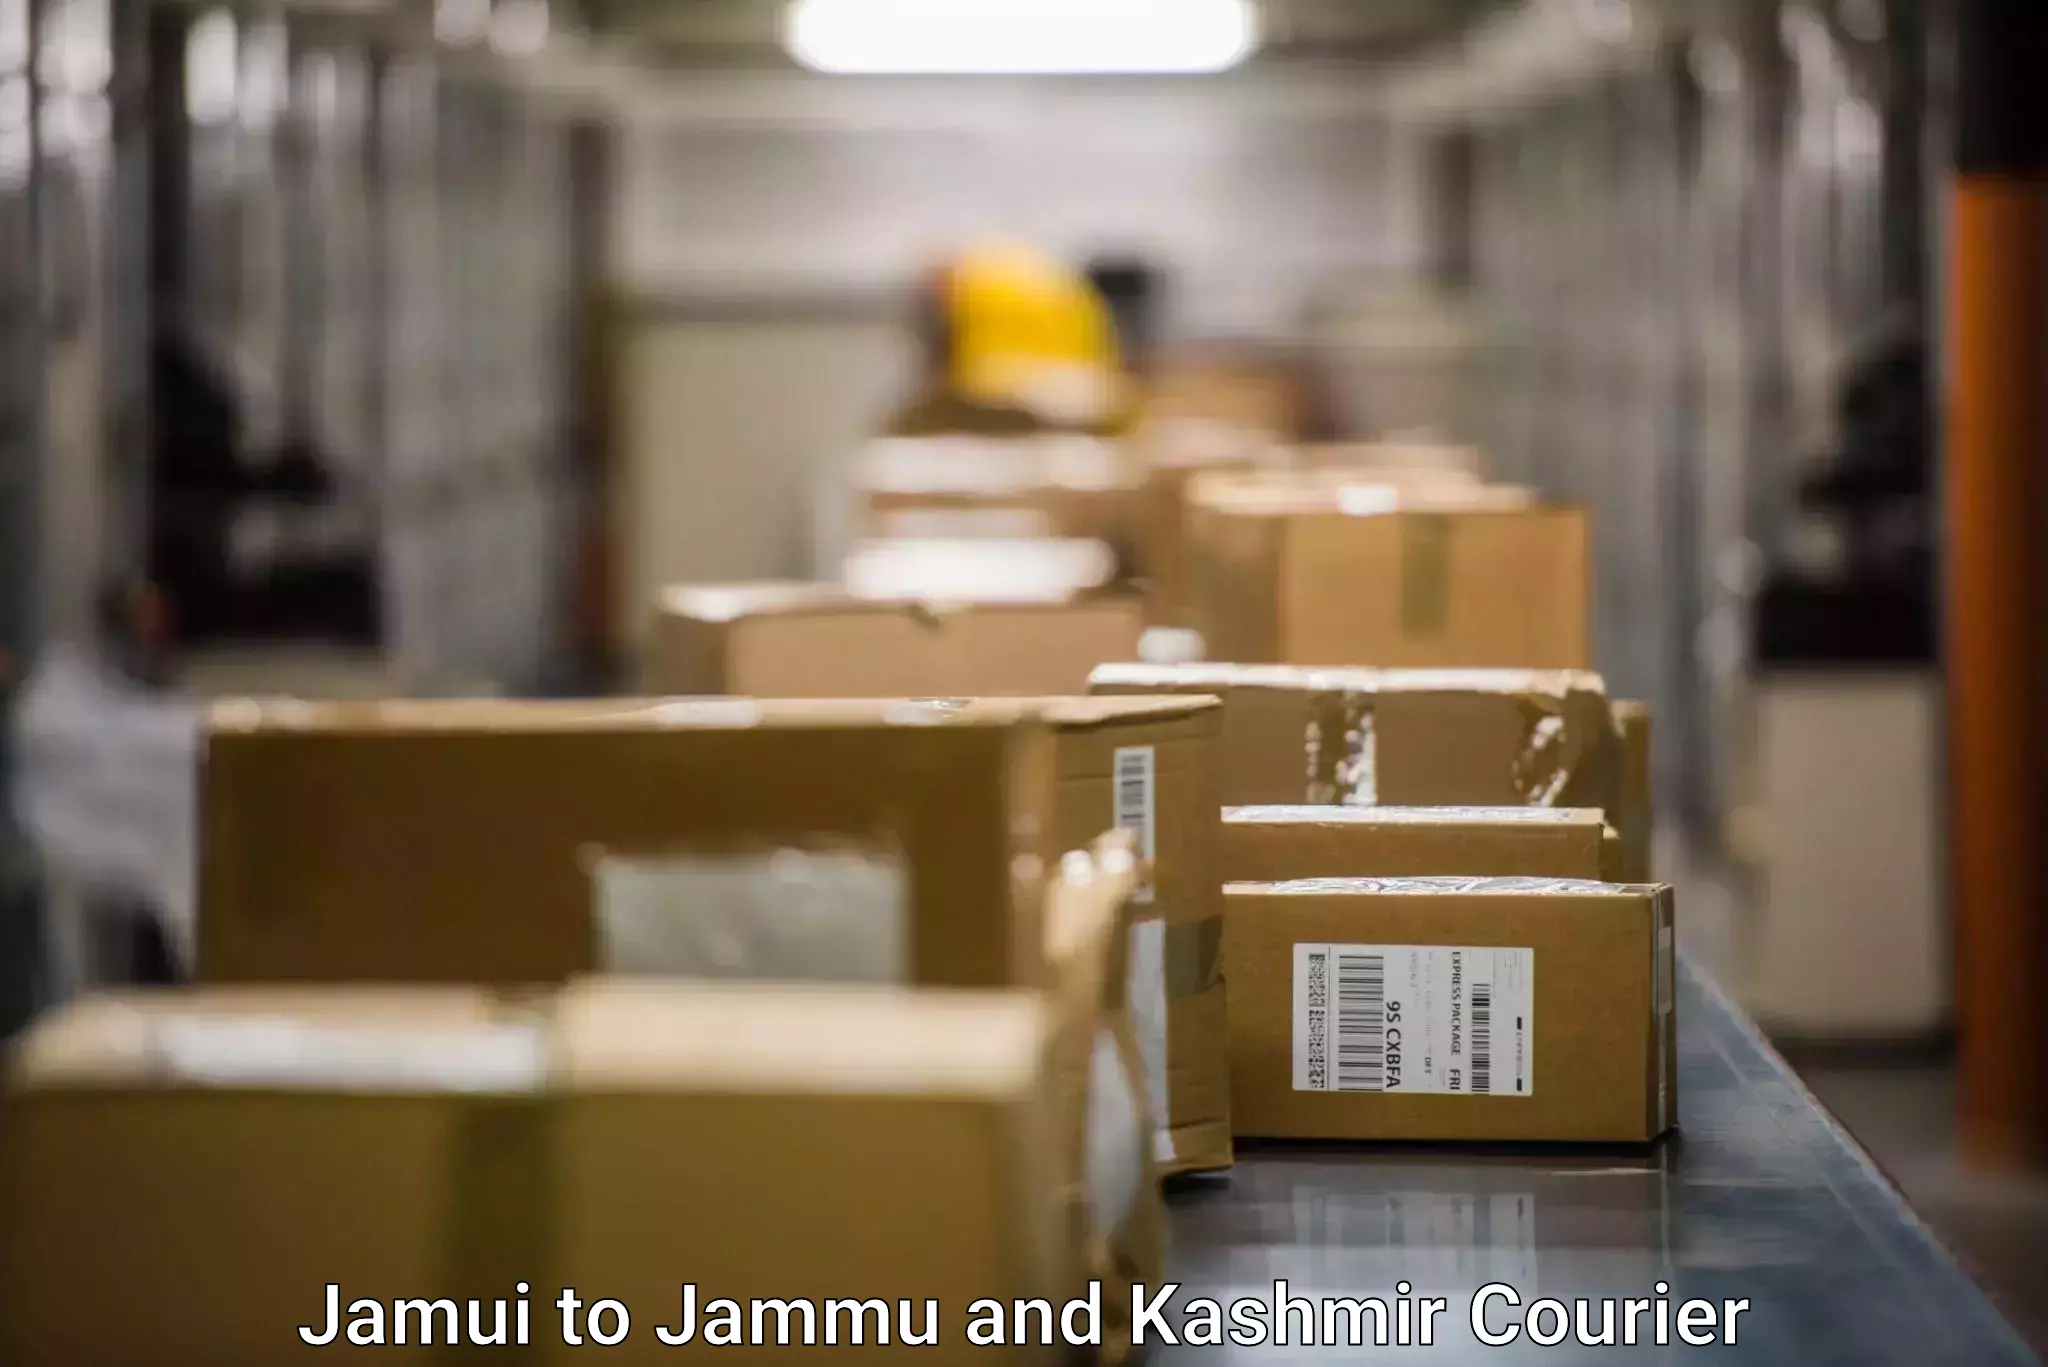 Modern delivery methods Jamui to Kargil